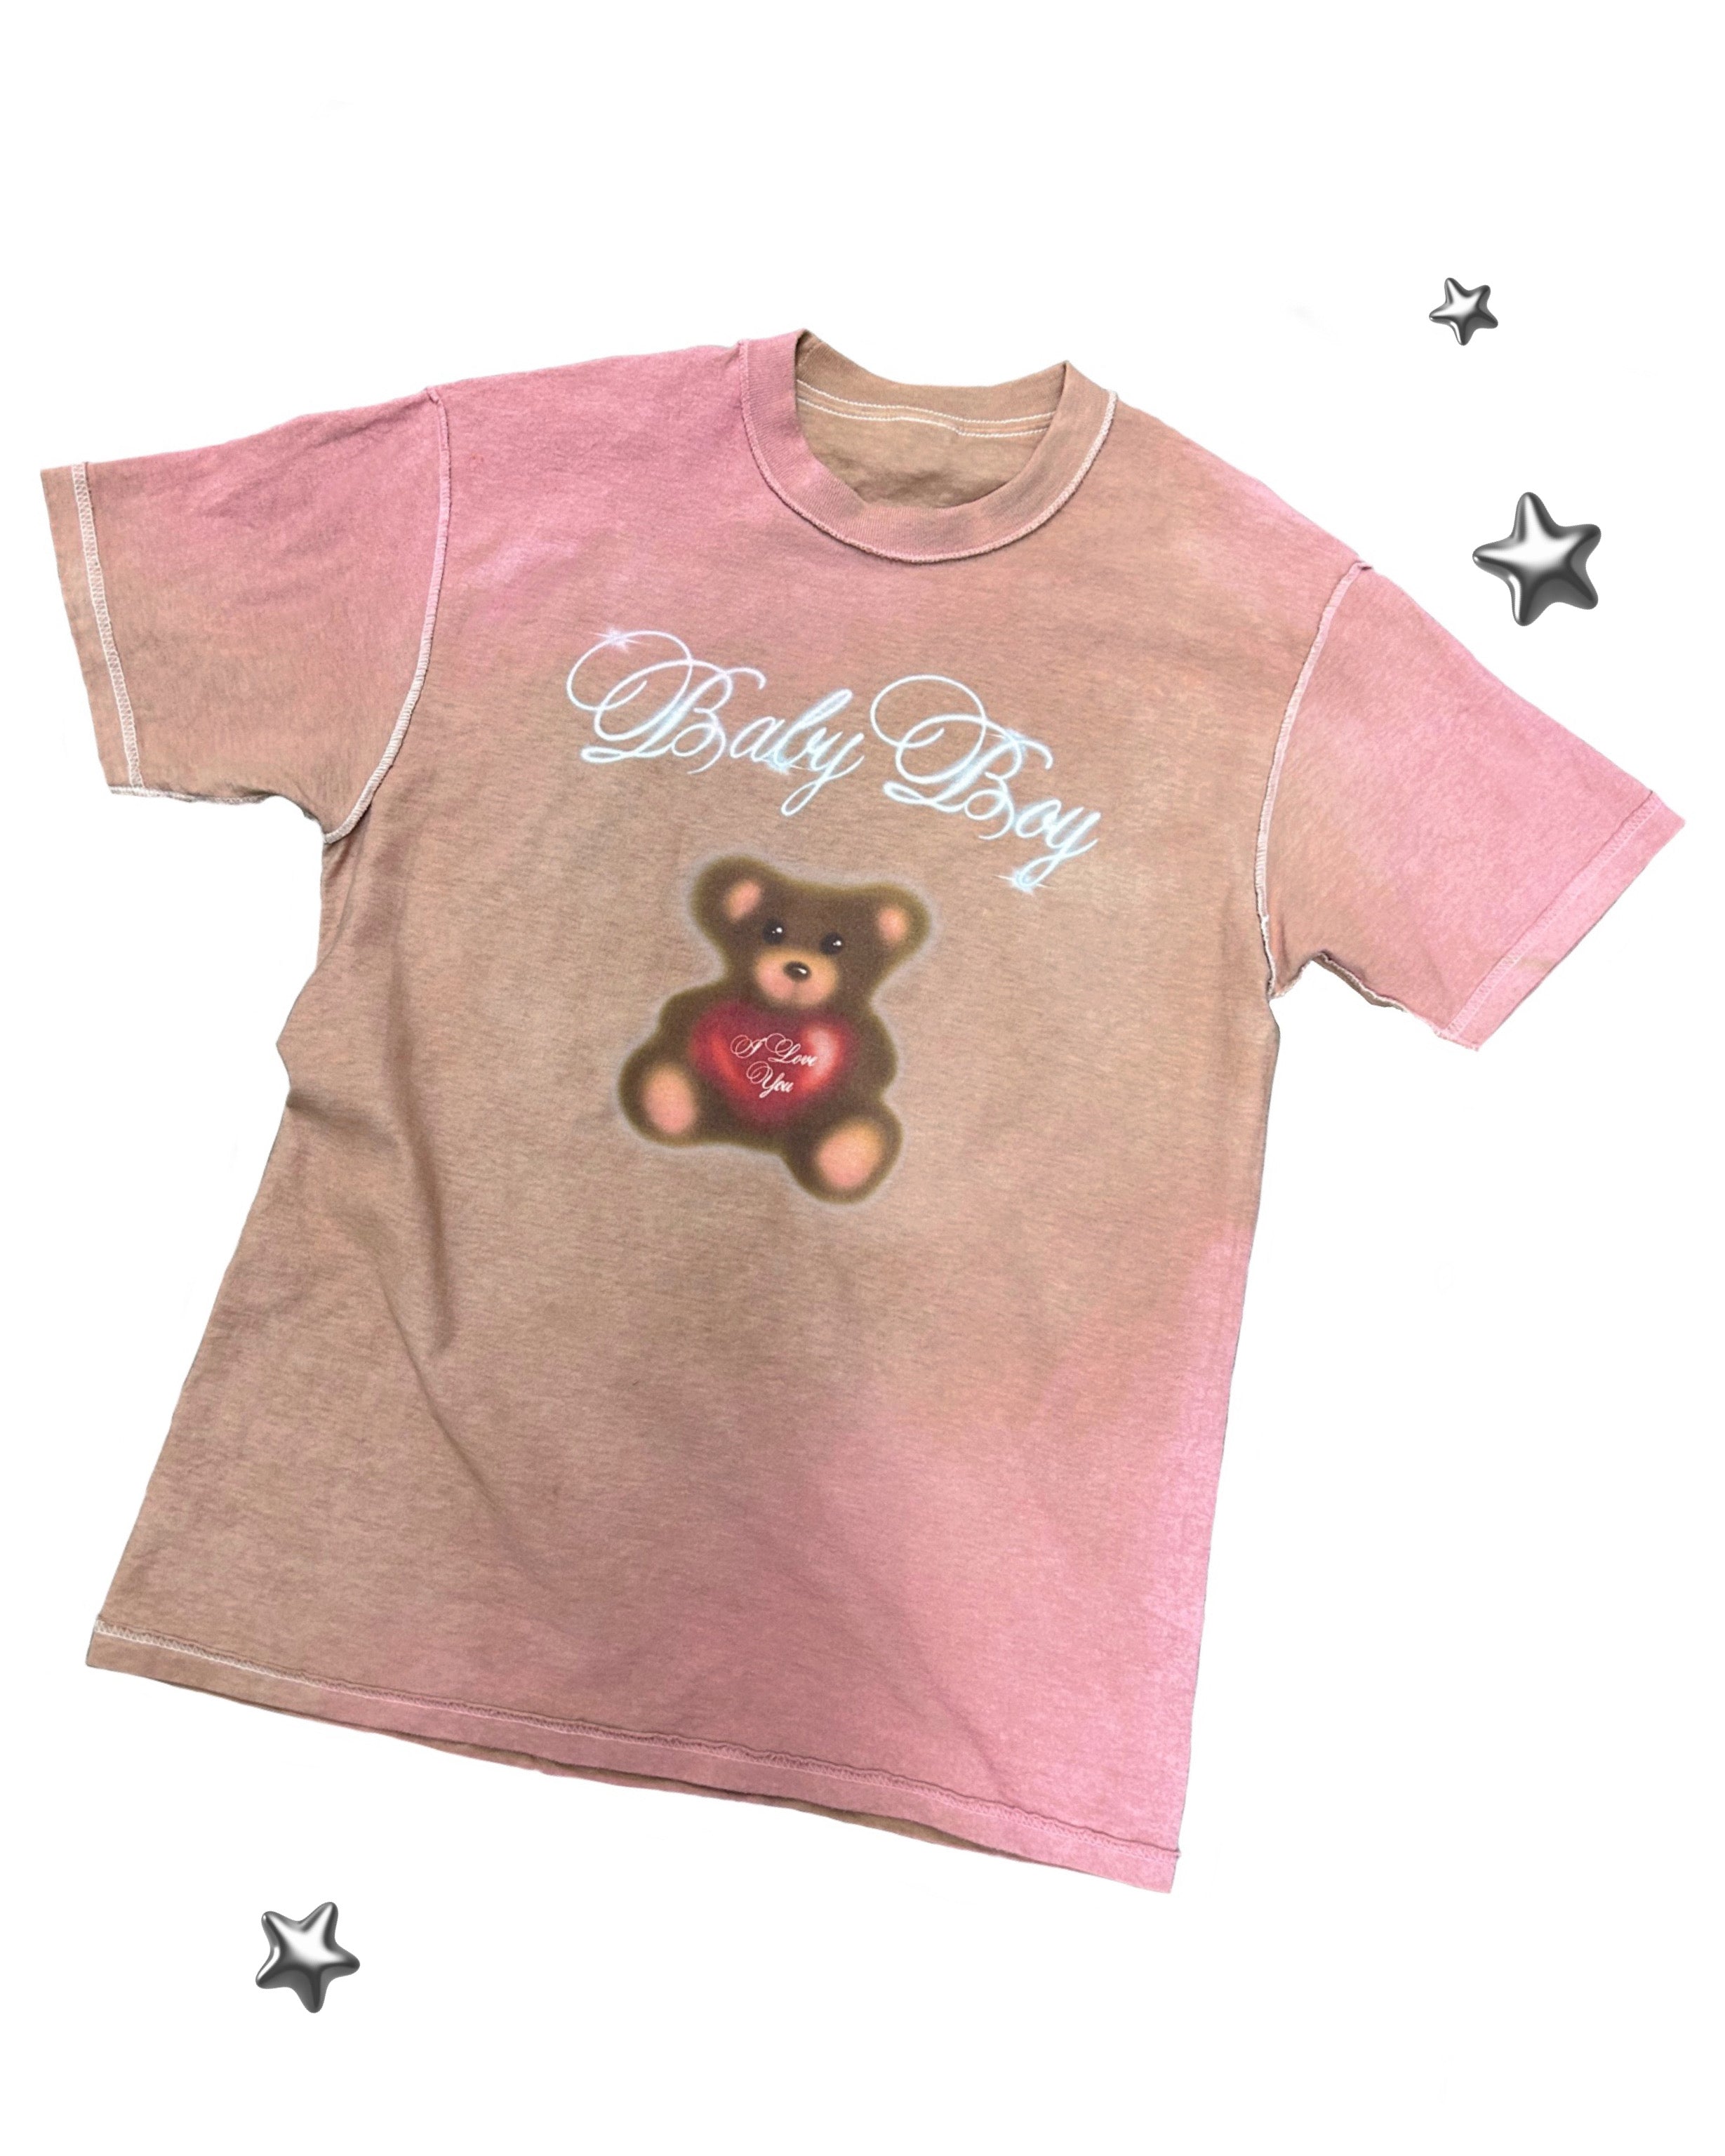 Teddy Bear BabyBoy Tee